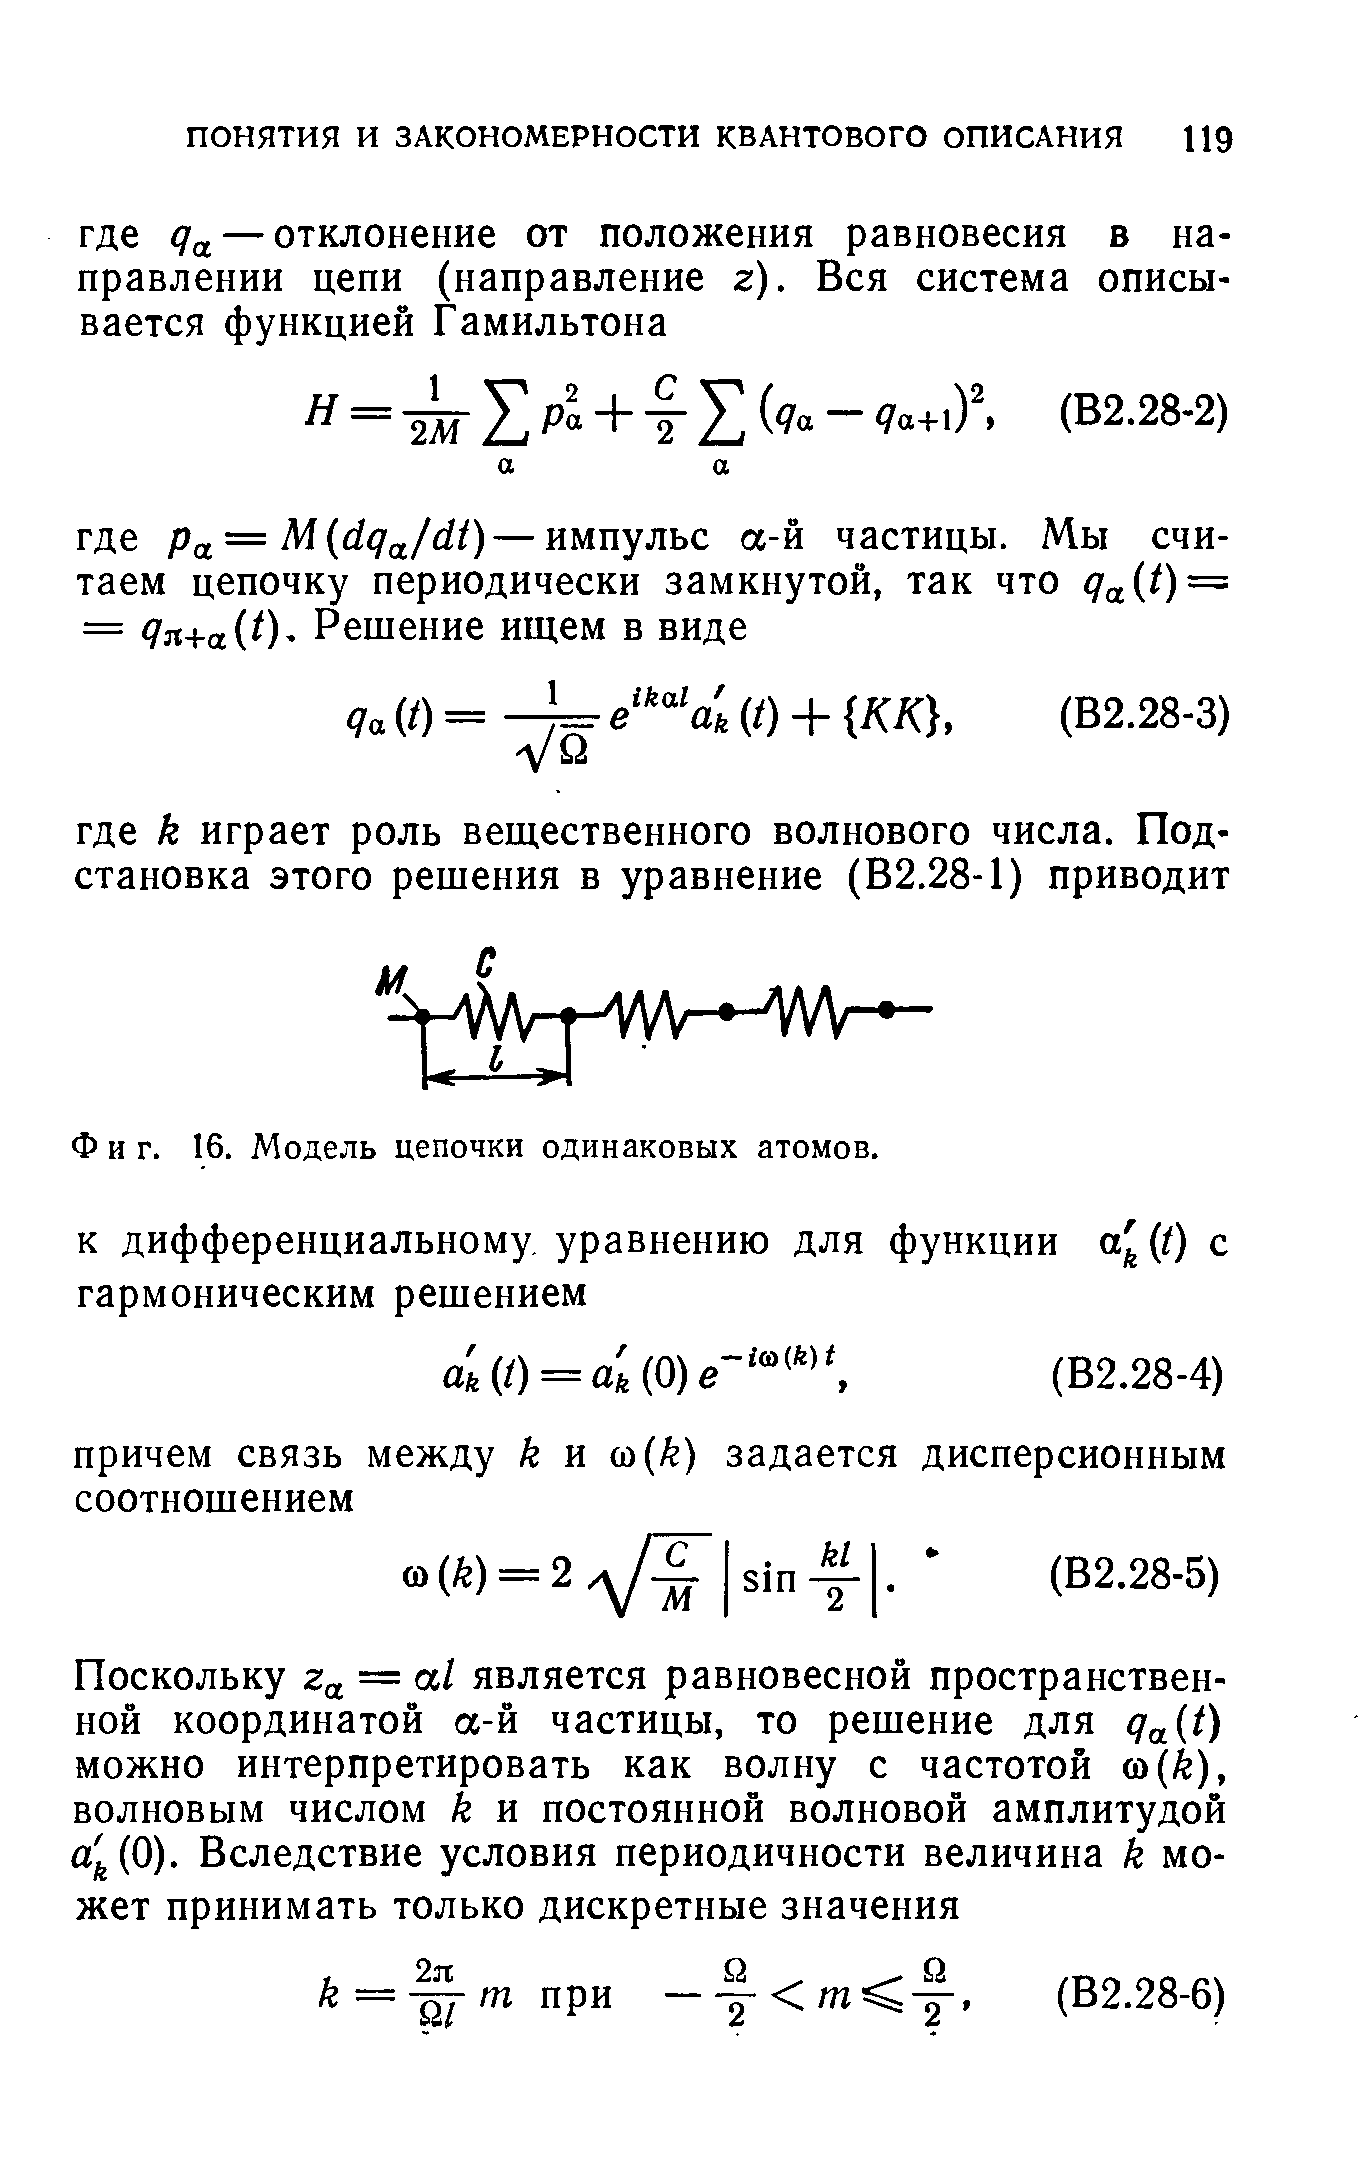 Фиг. 16. Модель цепочки одинаковых атомов.
